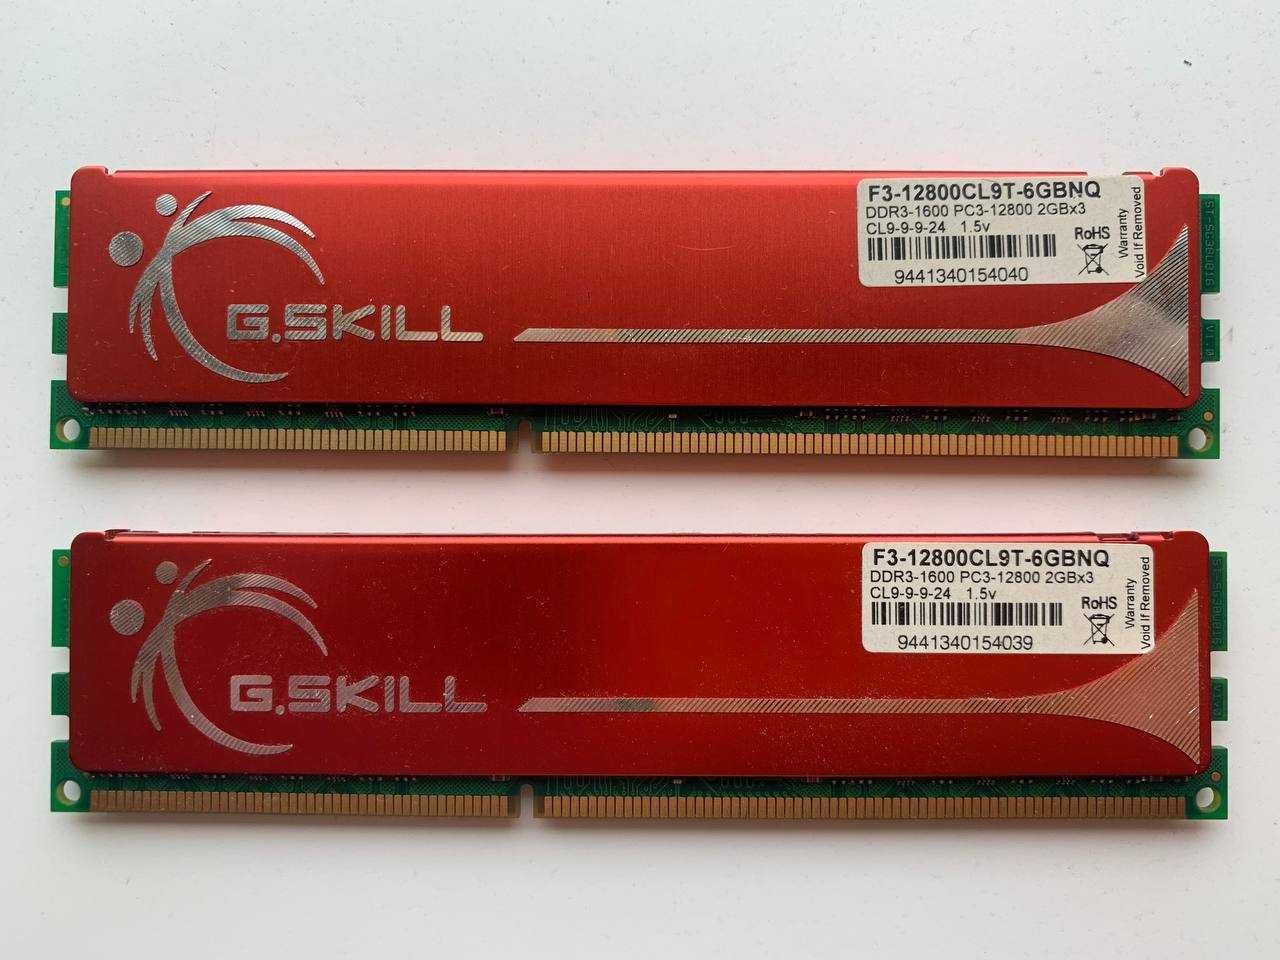 G.Skill DDR3-1600 4Gb (2x2Gb) PC3-12800 NQ series (F3-12800CL9T-6GBNQ)